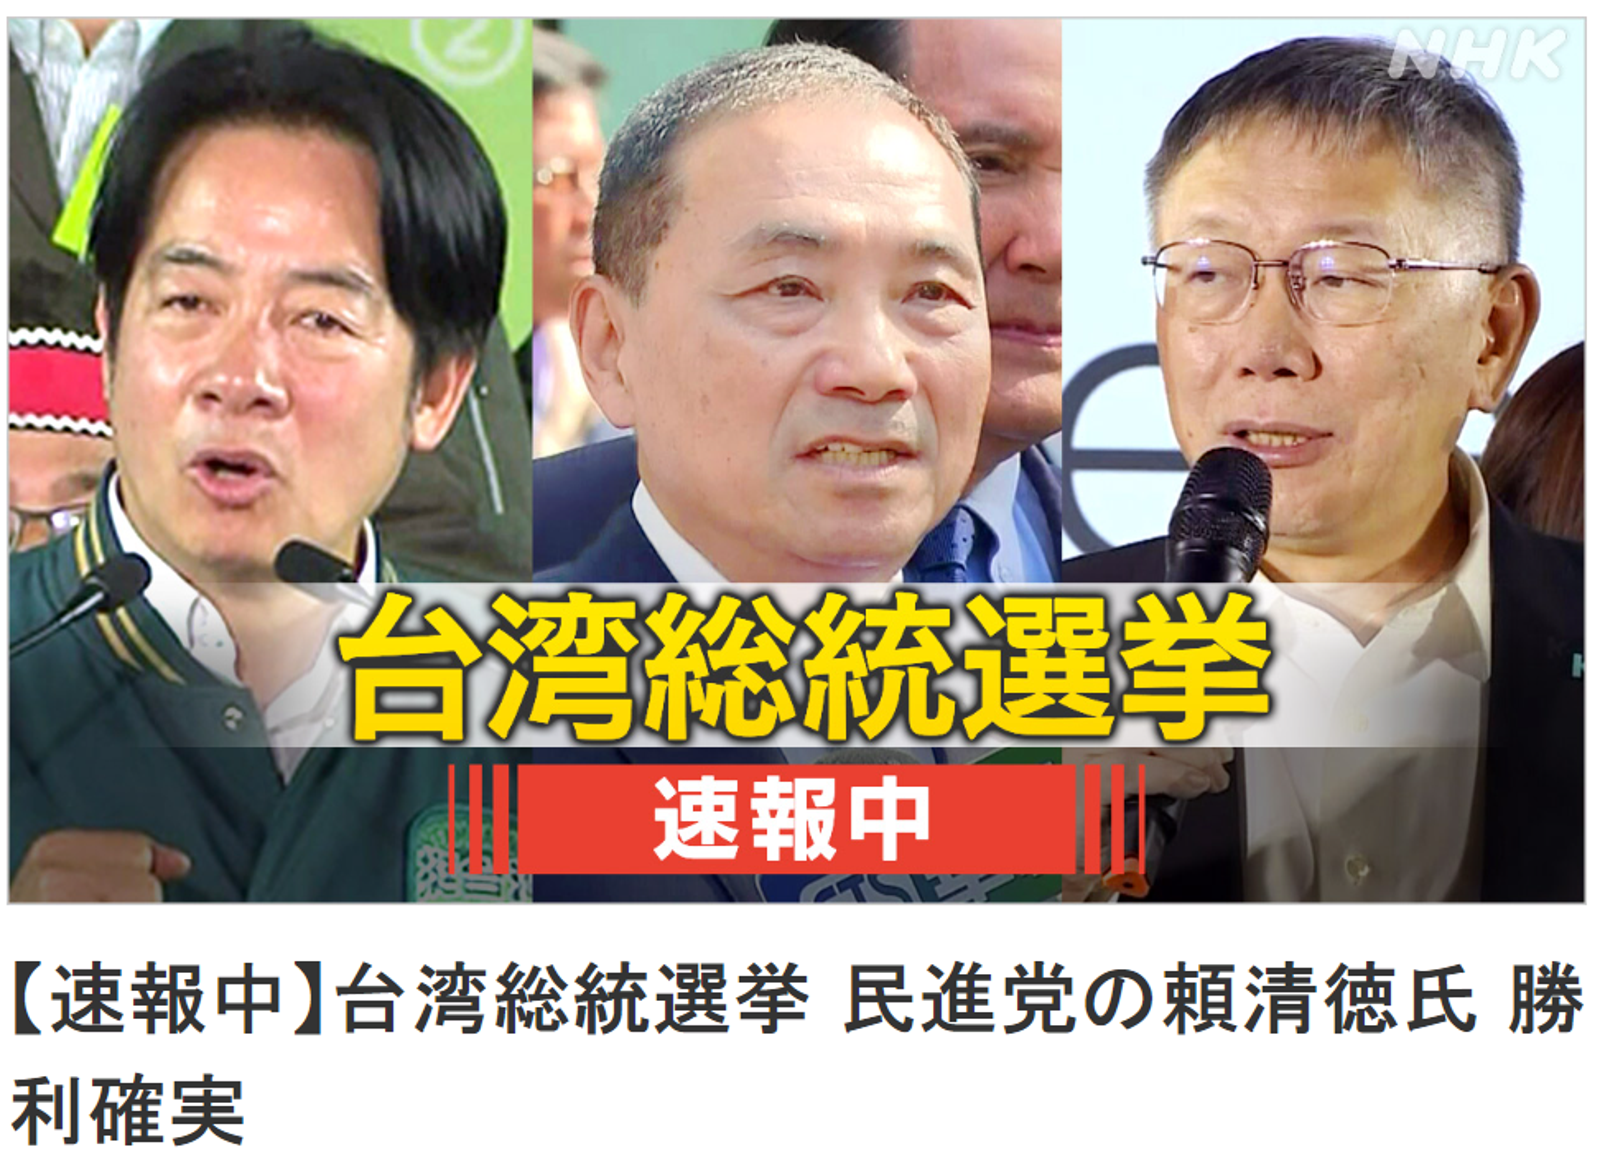 日本NHK也相當關注台灣這場選戰